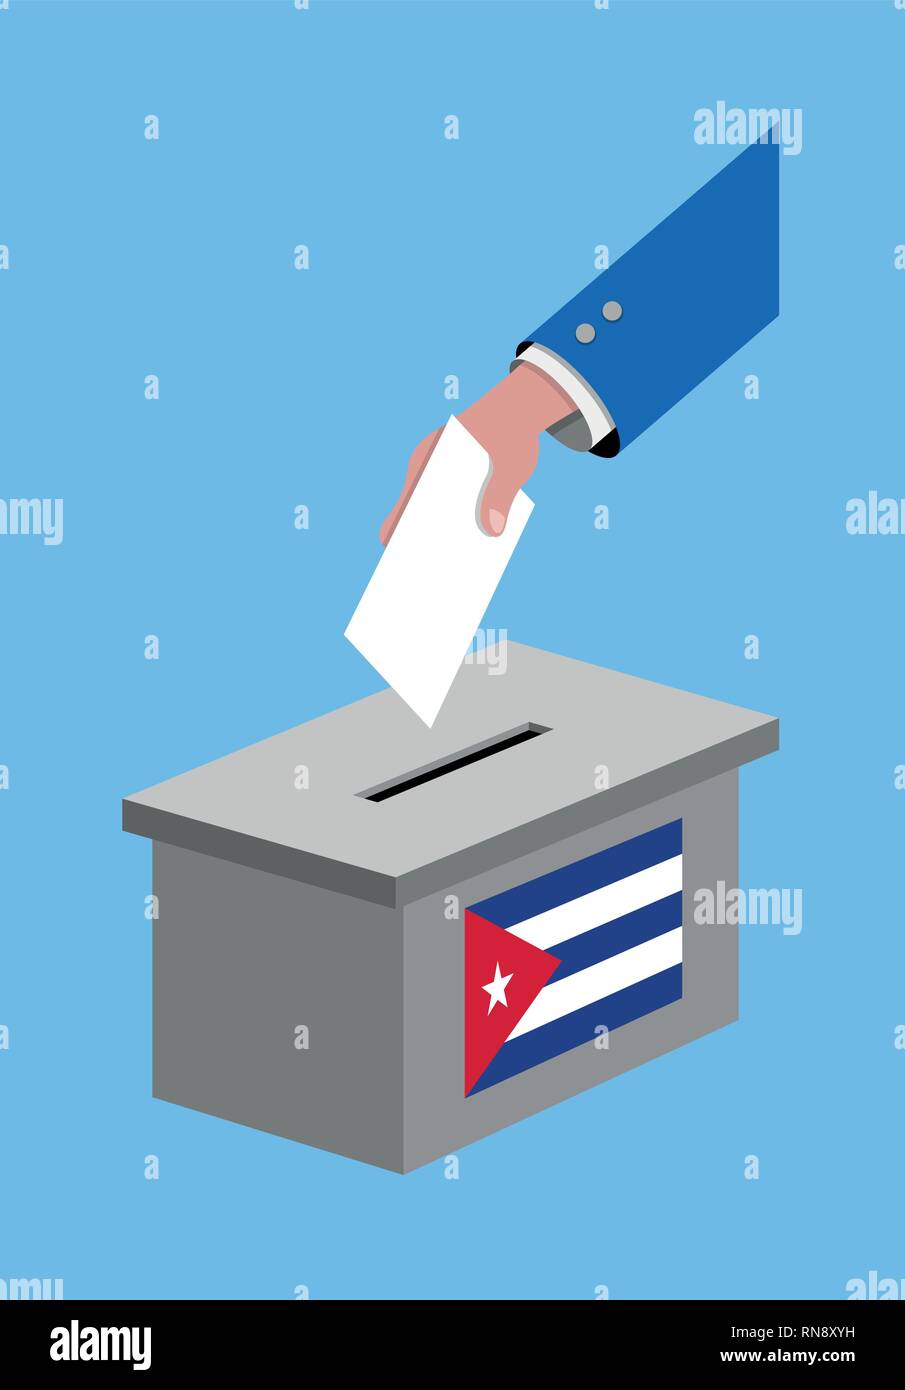 Abstimmung für kubanische Wahl mit Stimmrecht, Stimmzettel und Kuba Flagge. Alle die Silhouette von Objekten und Hintergrund sind in verschiedenen Schichten. Stock Vektor